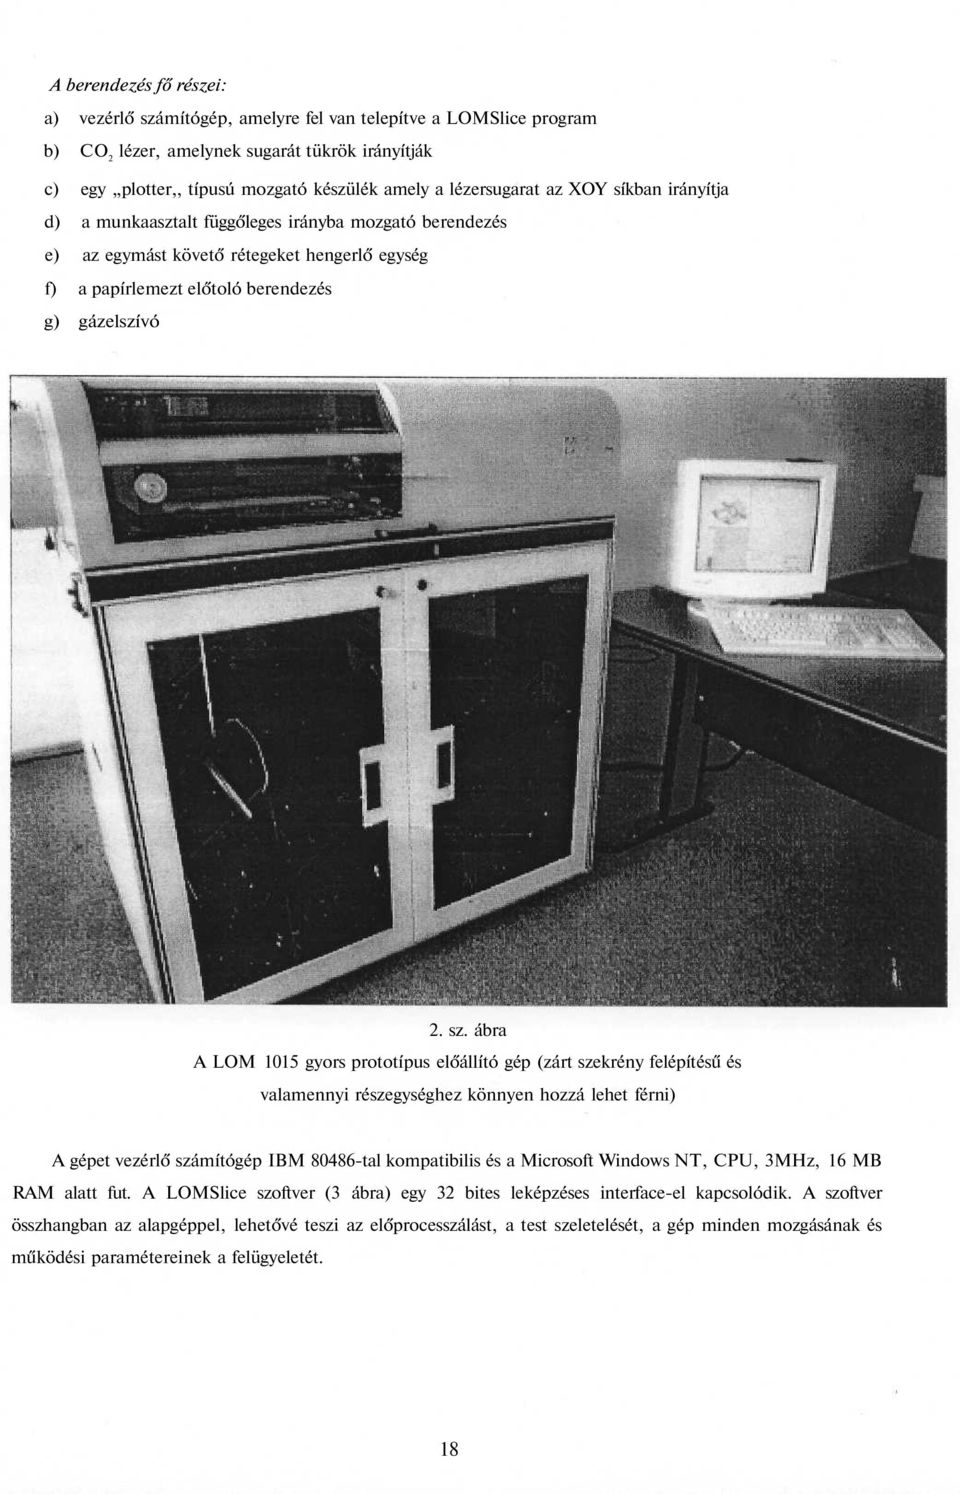 ábra A LOM 1015 gyors prototípus előállító gép (zárt szekrény felépítésű és valamennyi részegységhez könnyen hozzá lehet férni) A gépet vezérlő számítógép IBM 80486-tal kompatibilis és a Microsoft